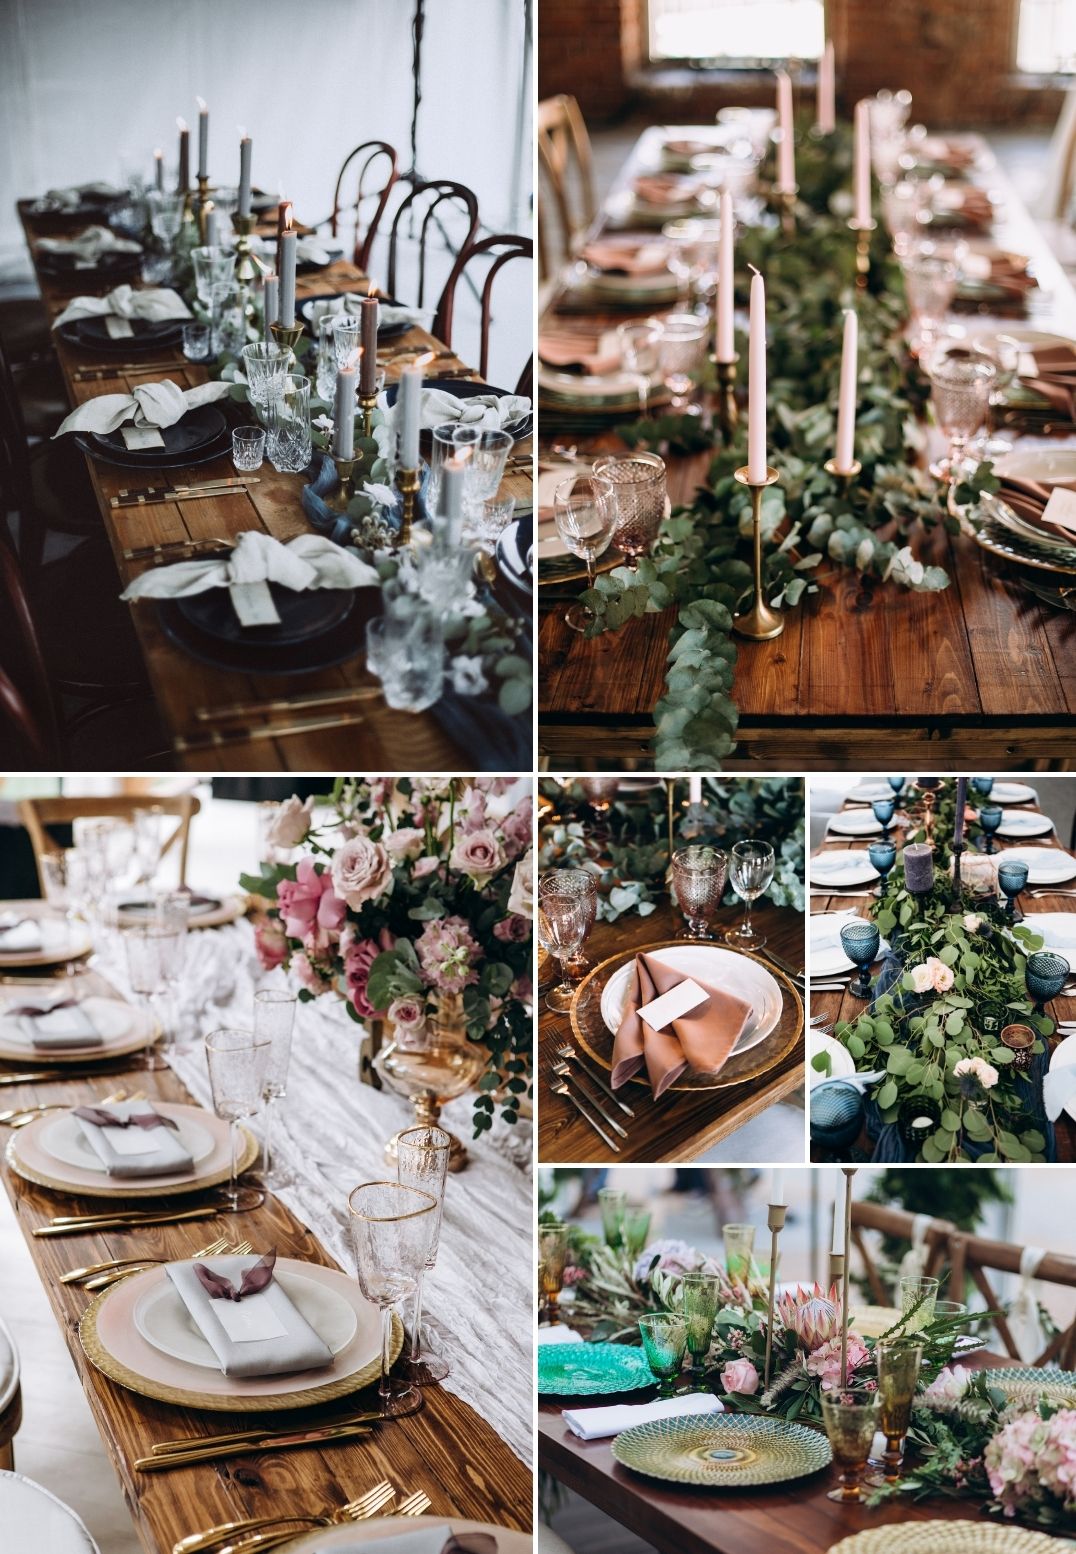 Przegląd najpiękniejszych dekoracji stołów weselnych utrzymanych w romantycznym stylu